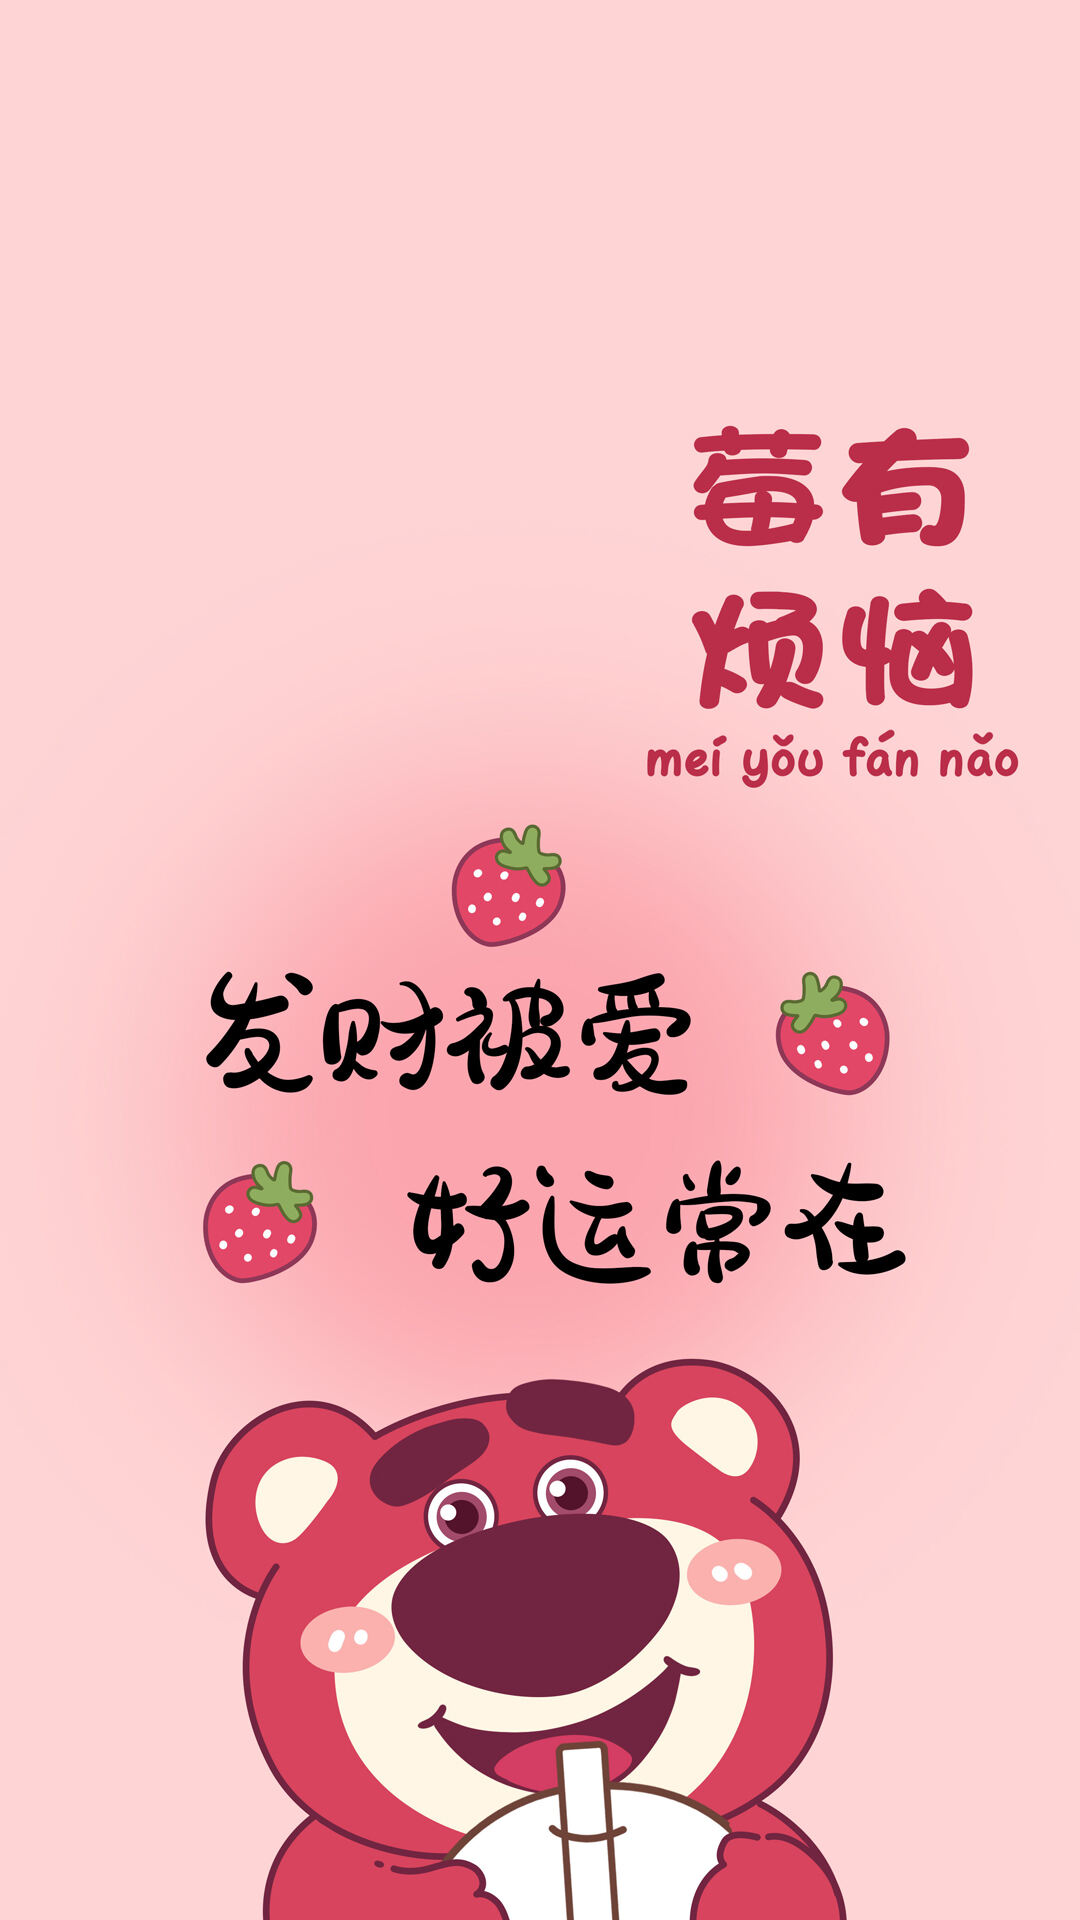 发财被爱，好运常在，粉色主题草莓熊可爱文字手机壁纸图片